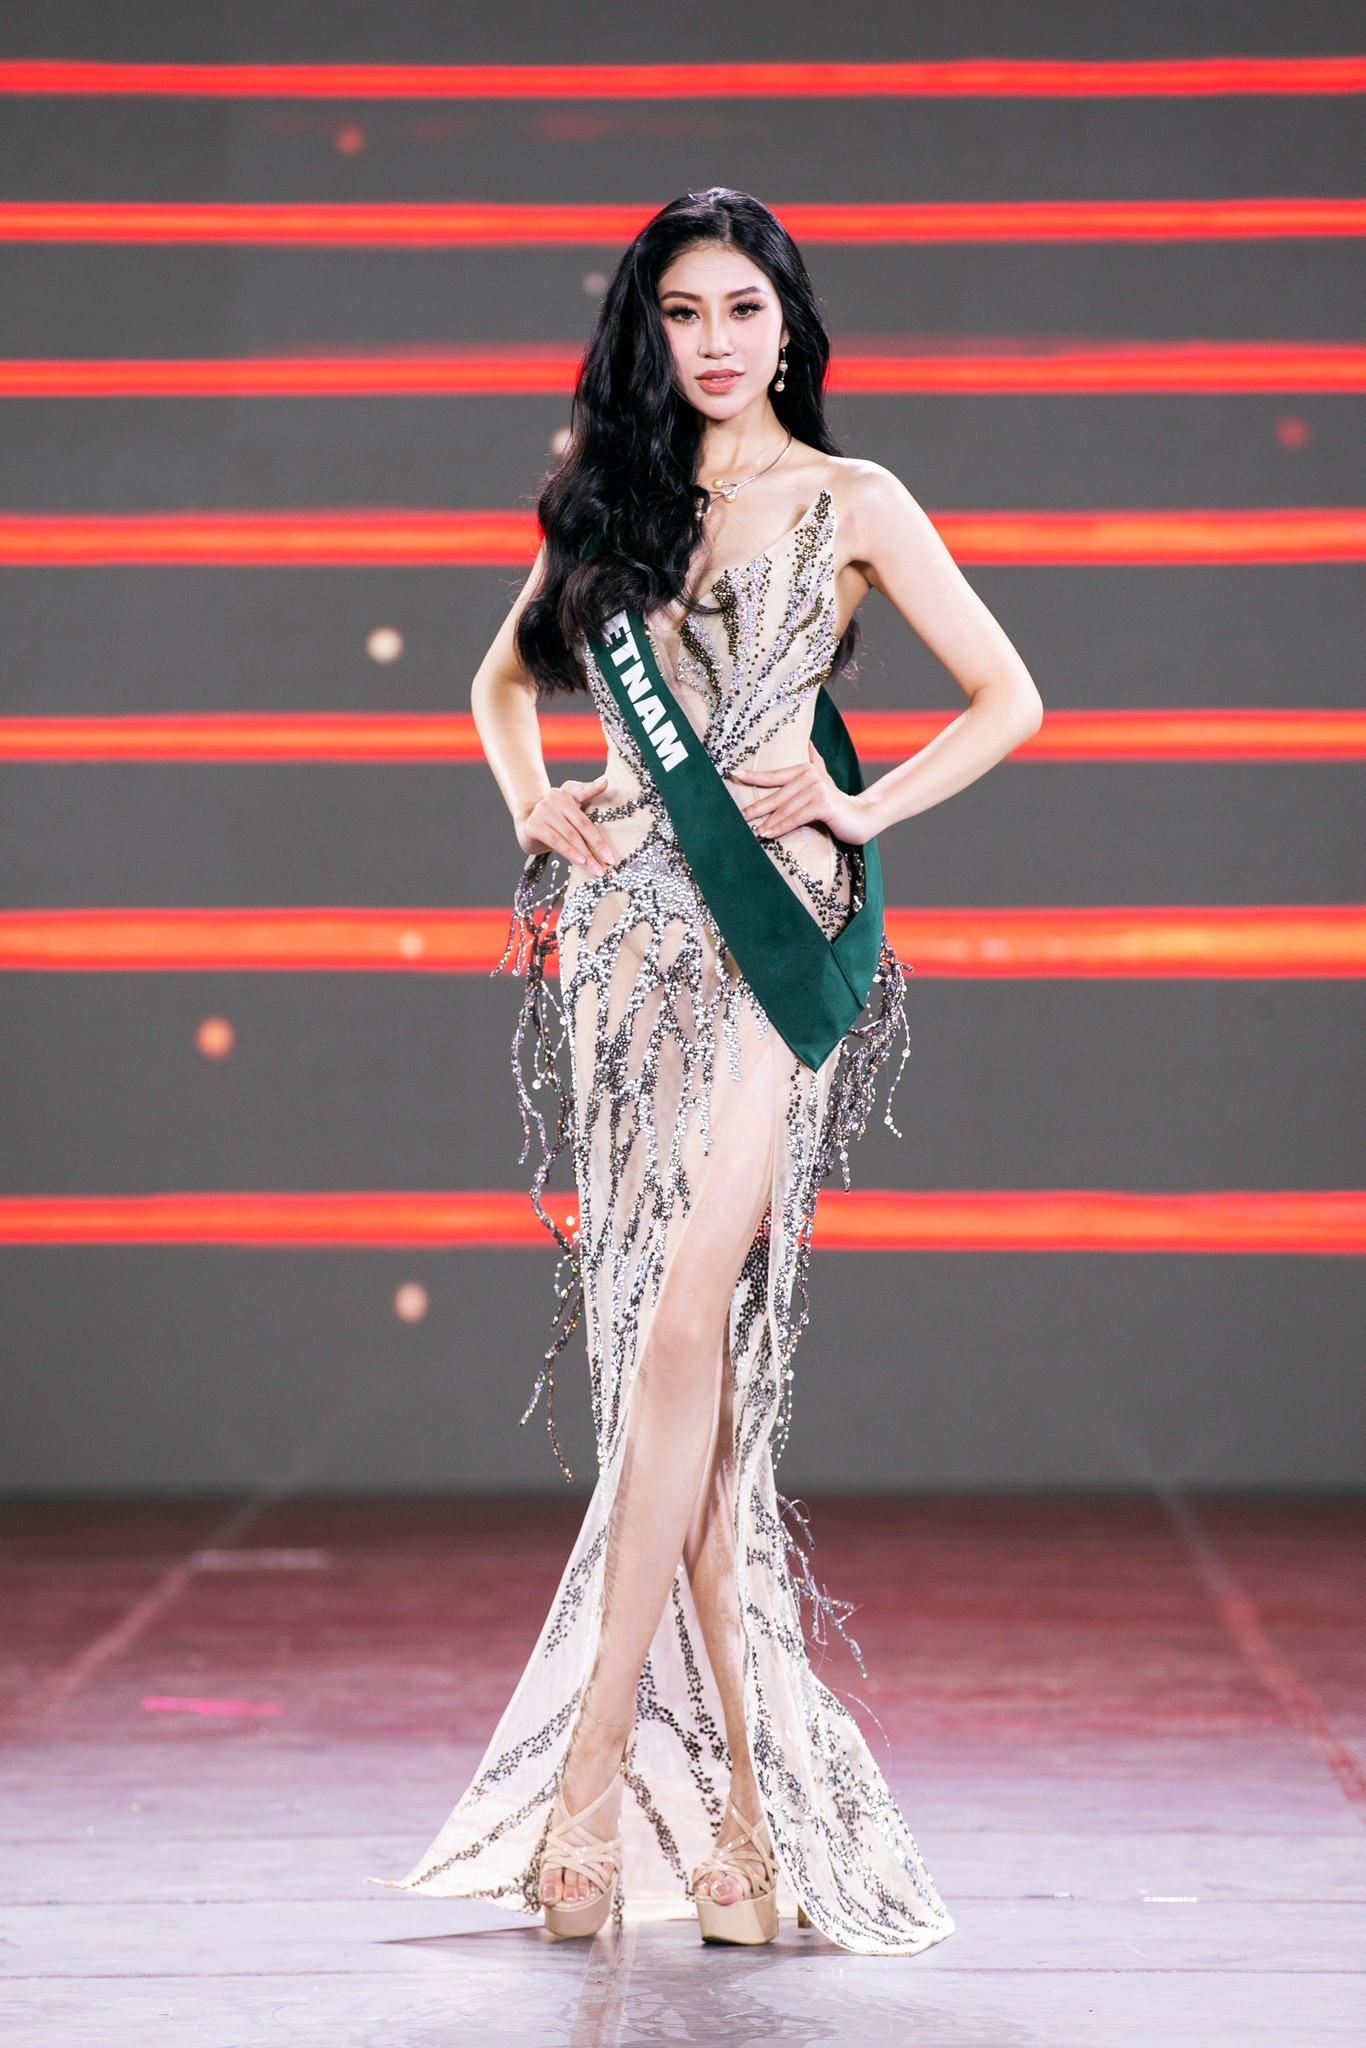 Nhan sắc ba người đẹp Việt vào đề cử Vẻ đẹp vượt thời gian